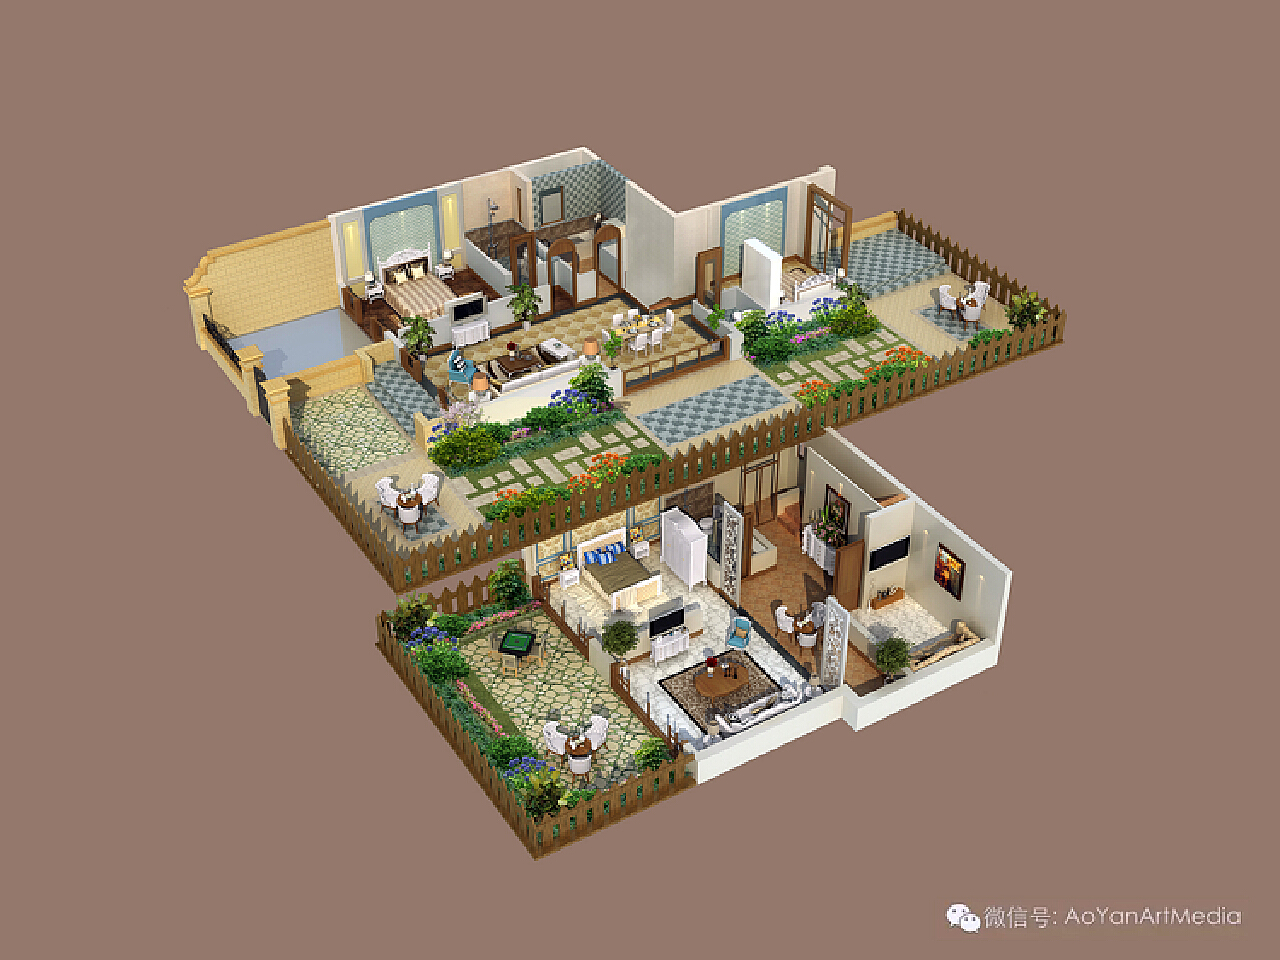 复式公寓 3D户型 maya vray 户型效果图-cg模型免费下载-CG99